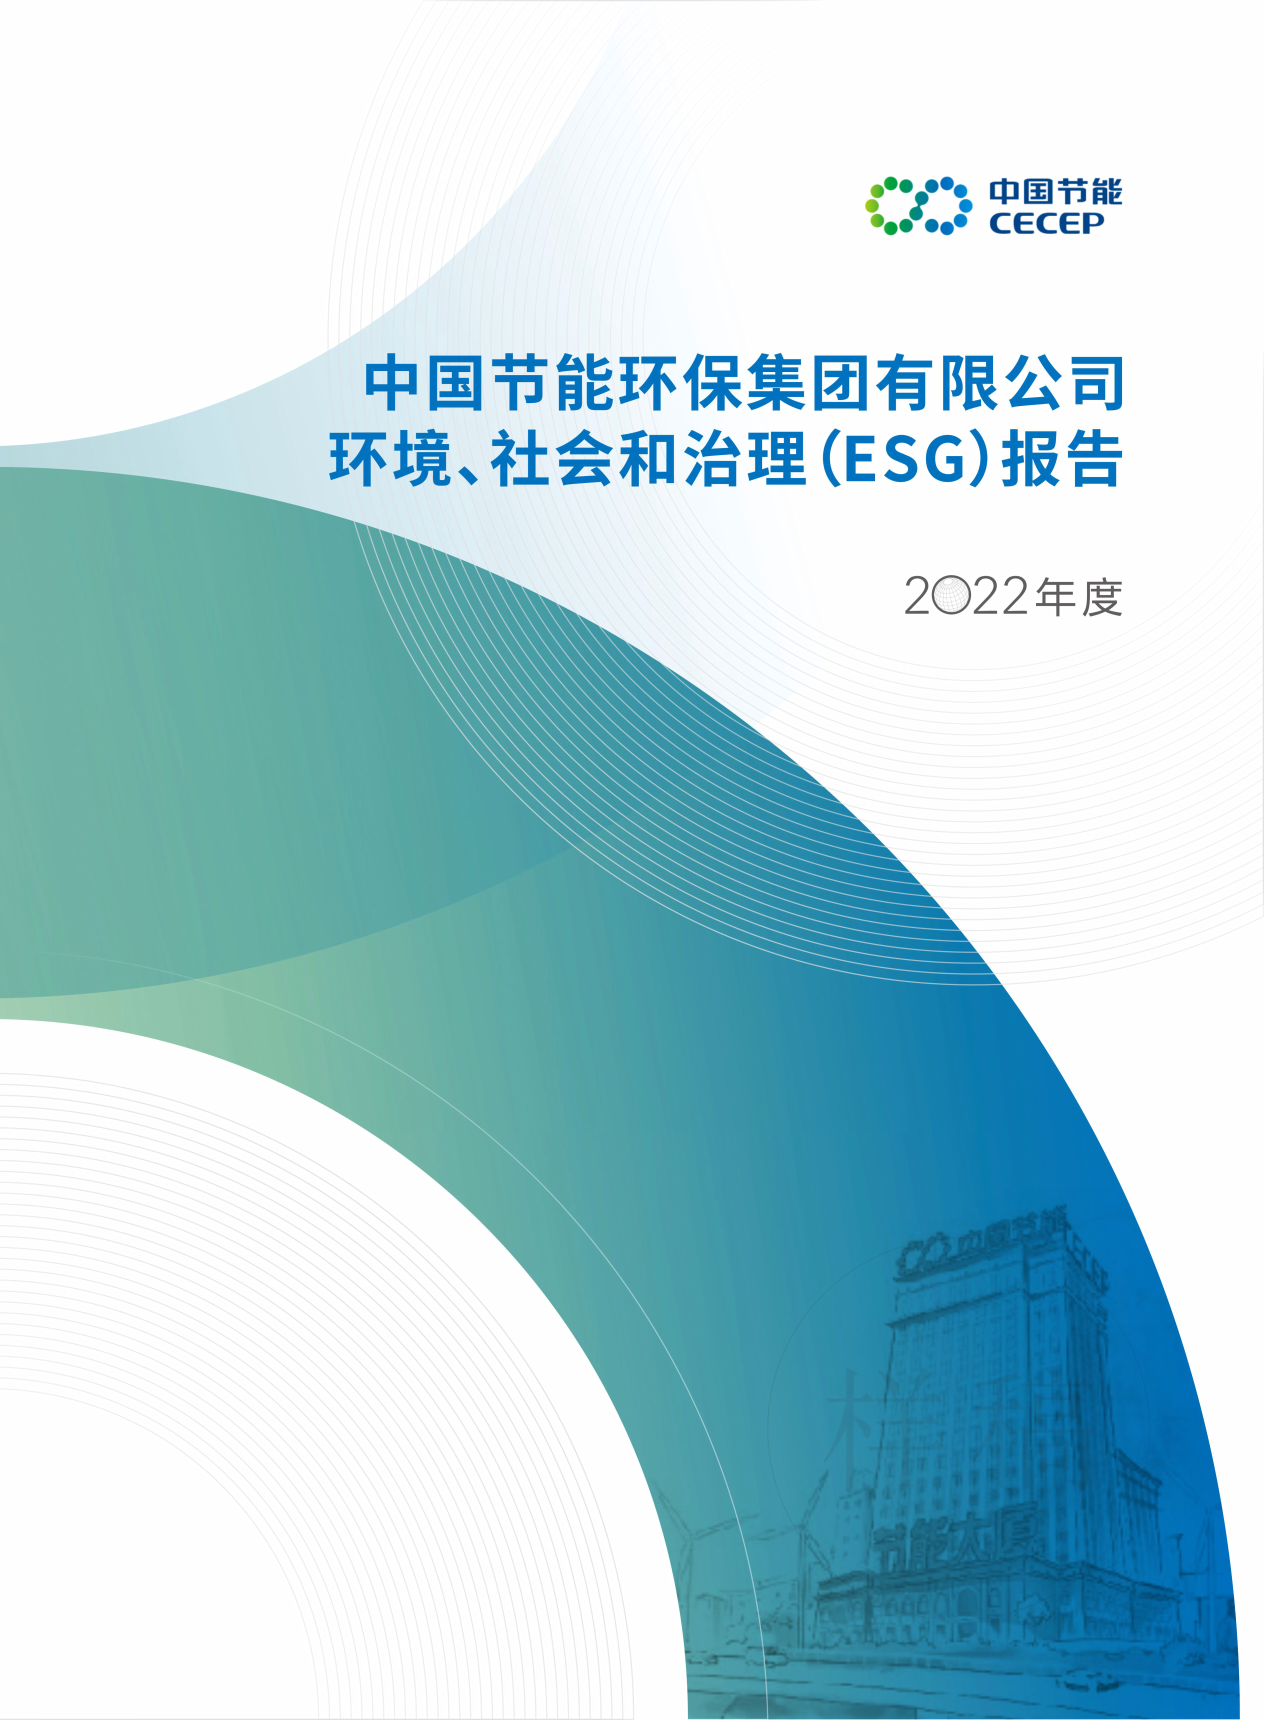 金沙官网js1232022年度环境、社会和治理（ESG）报告